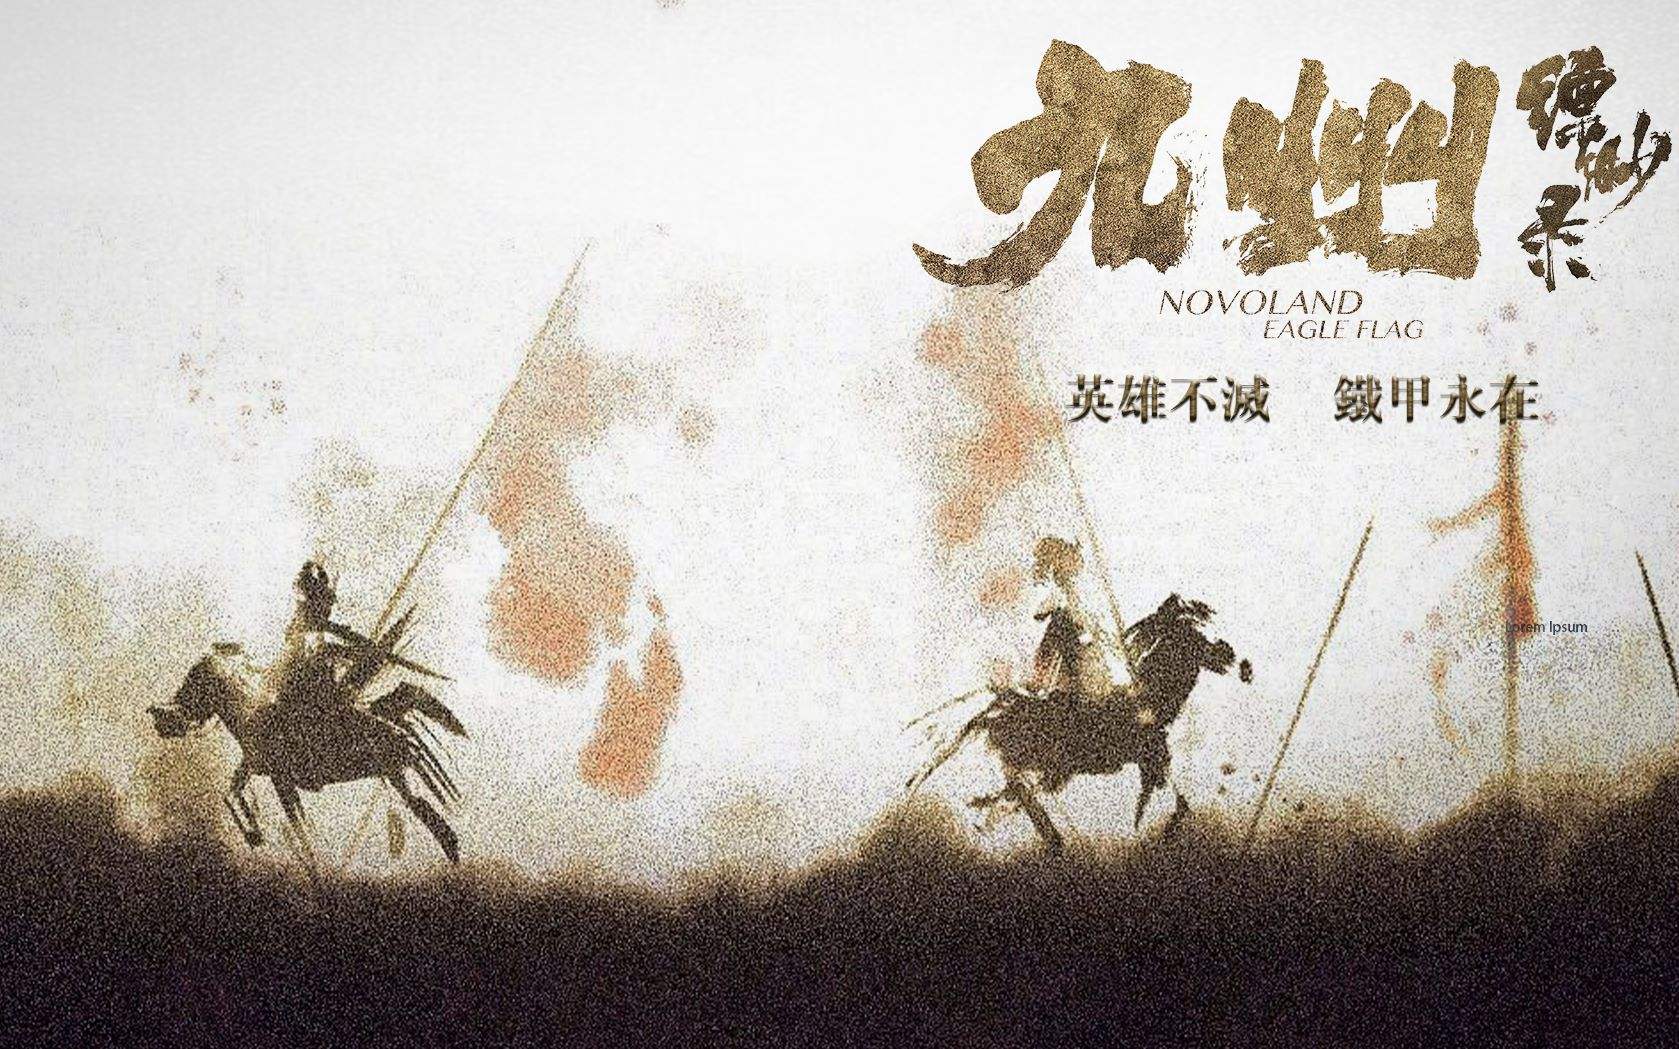 《九州缥缈录》:铁甲依然在是何意?